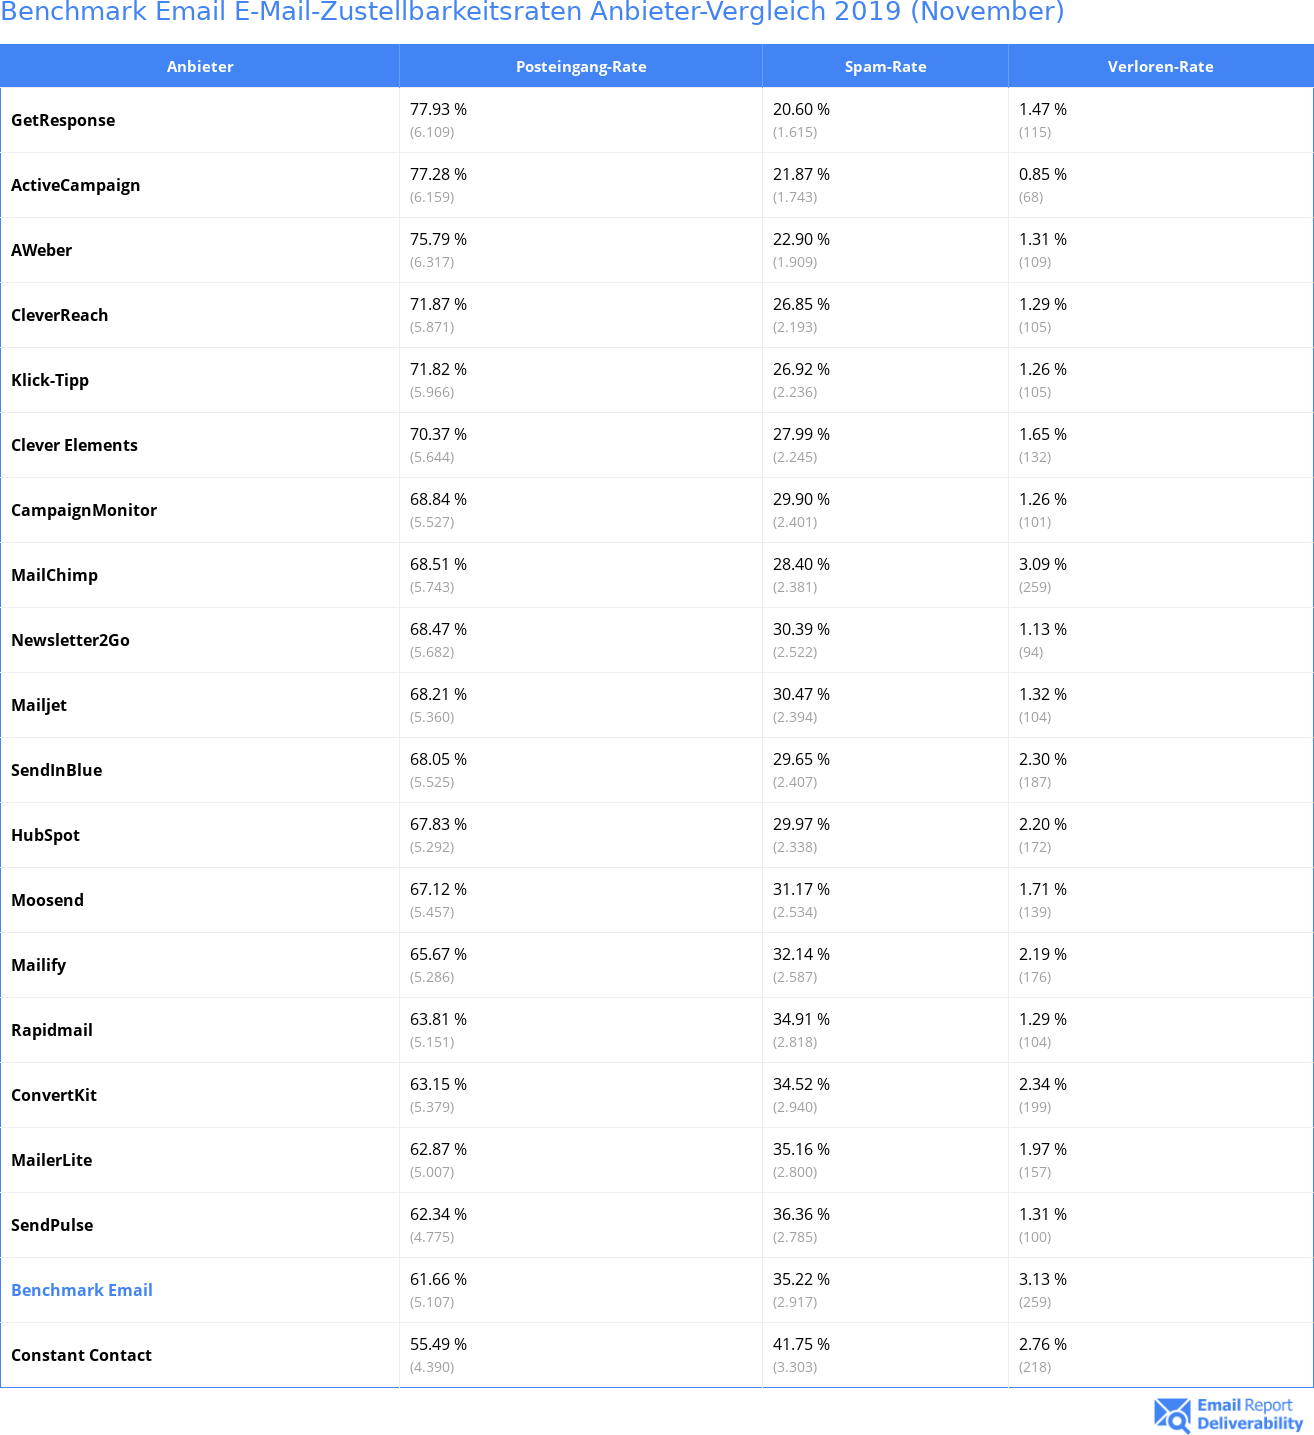 Benchmark Email E-Mail-Zustellbarkeitsraten Anbieter-Vergleich 2019 (November)